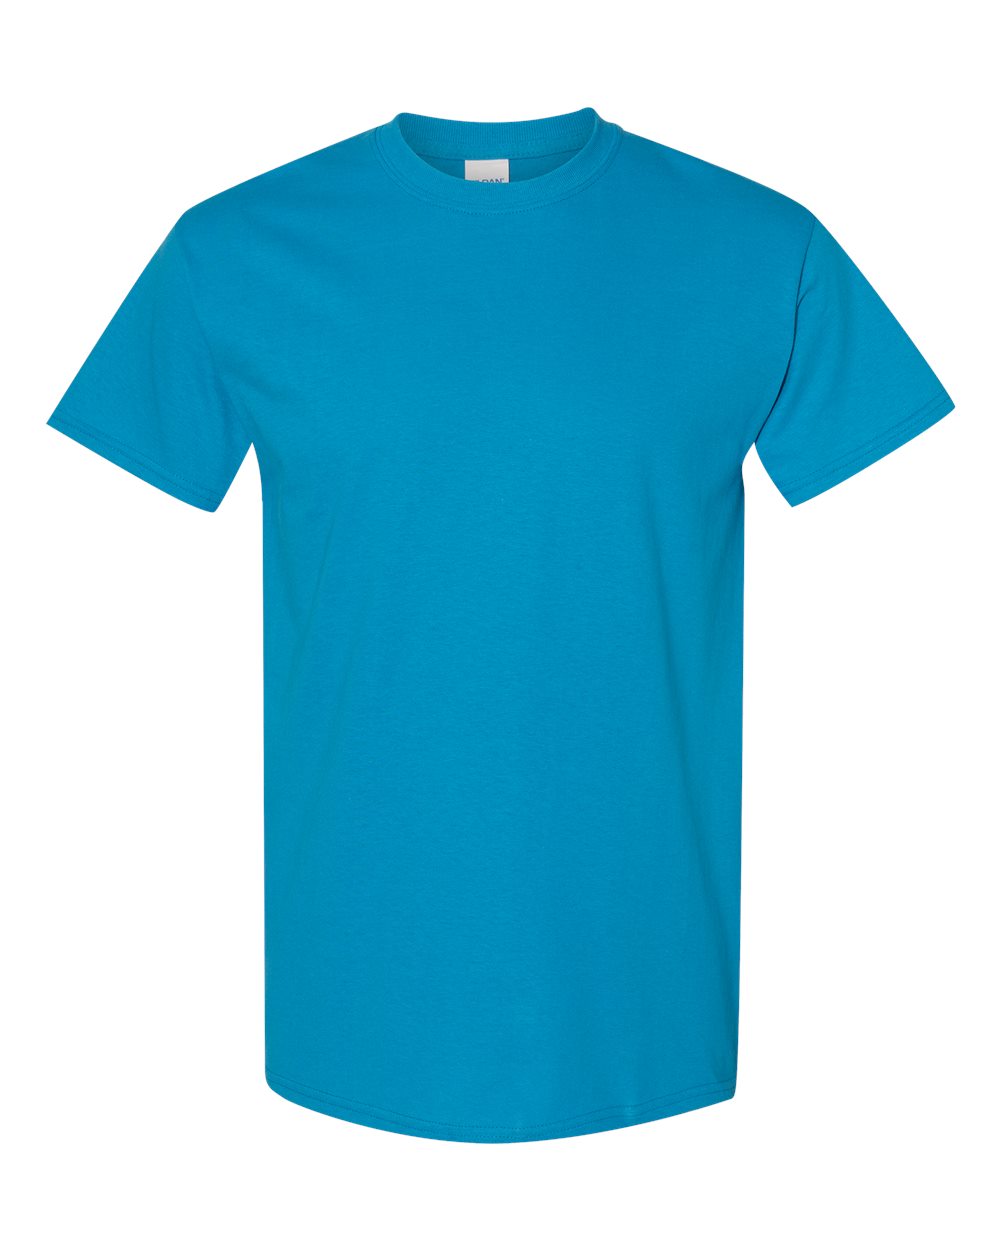 Athletic T-Shirt ~ Liquid Blue Outlet Shop ~ Cherry Art Editions